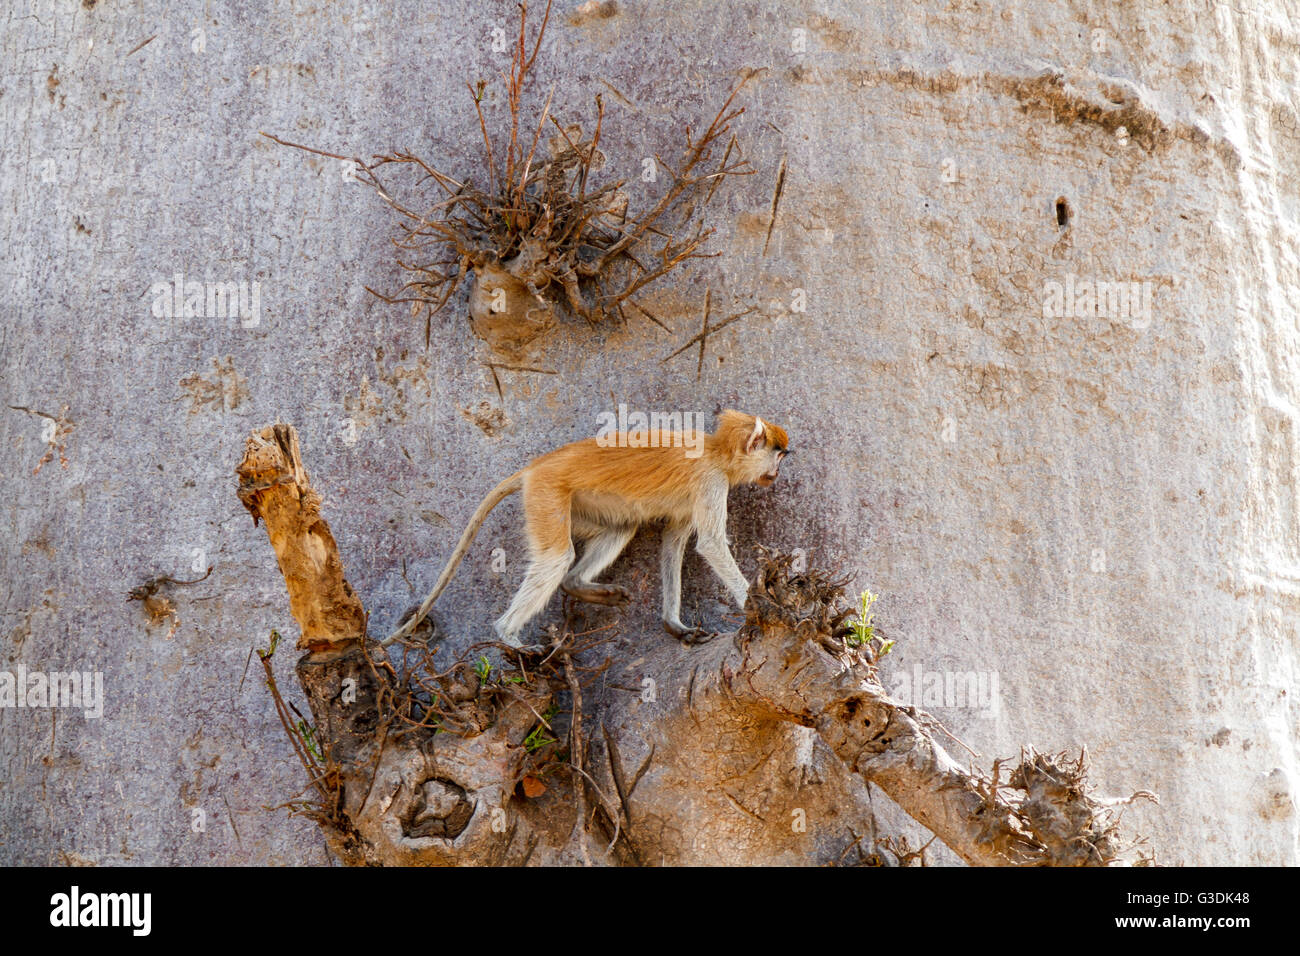 Patas monkey (Erythrocebus patas), o ussaro scimmia in una struttura ad albero di baobab in Senegal Foto Stock